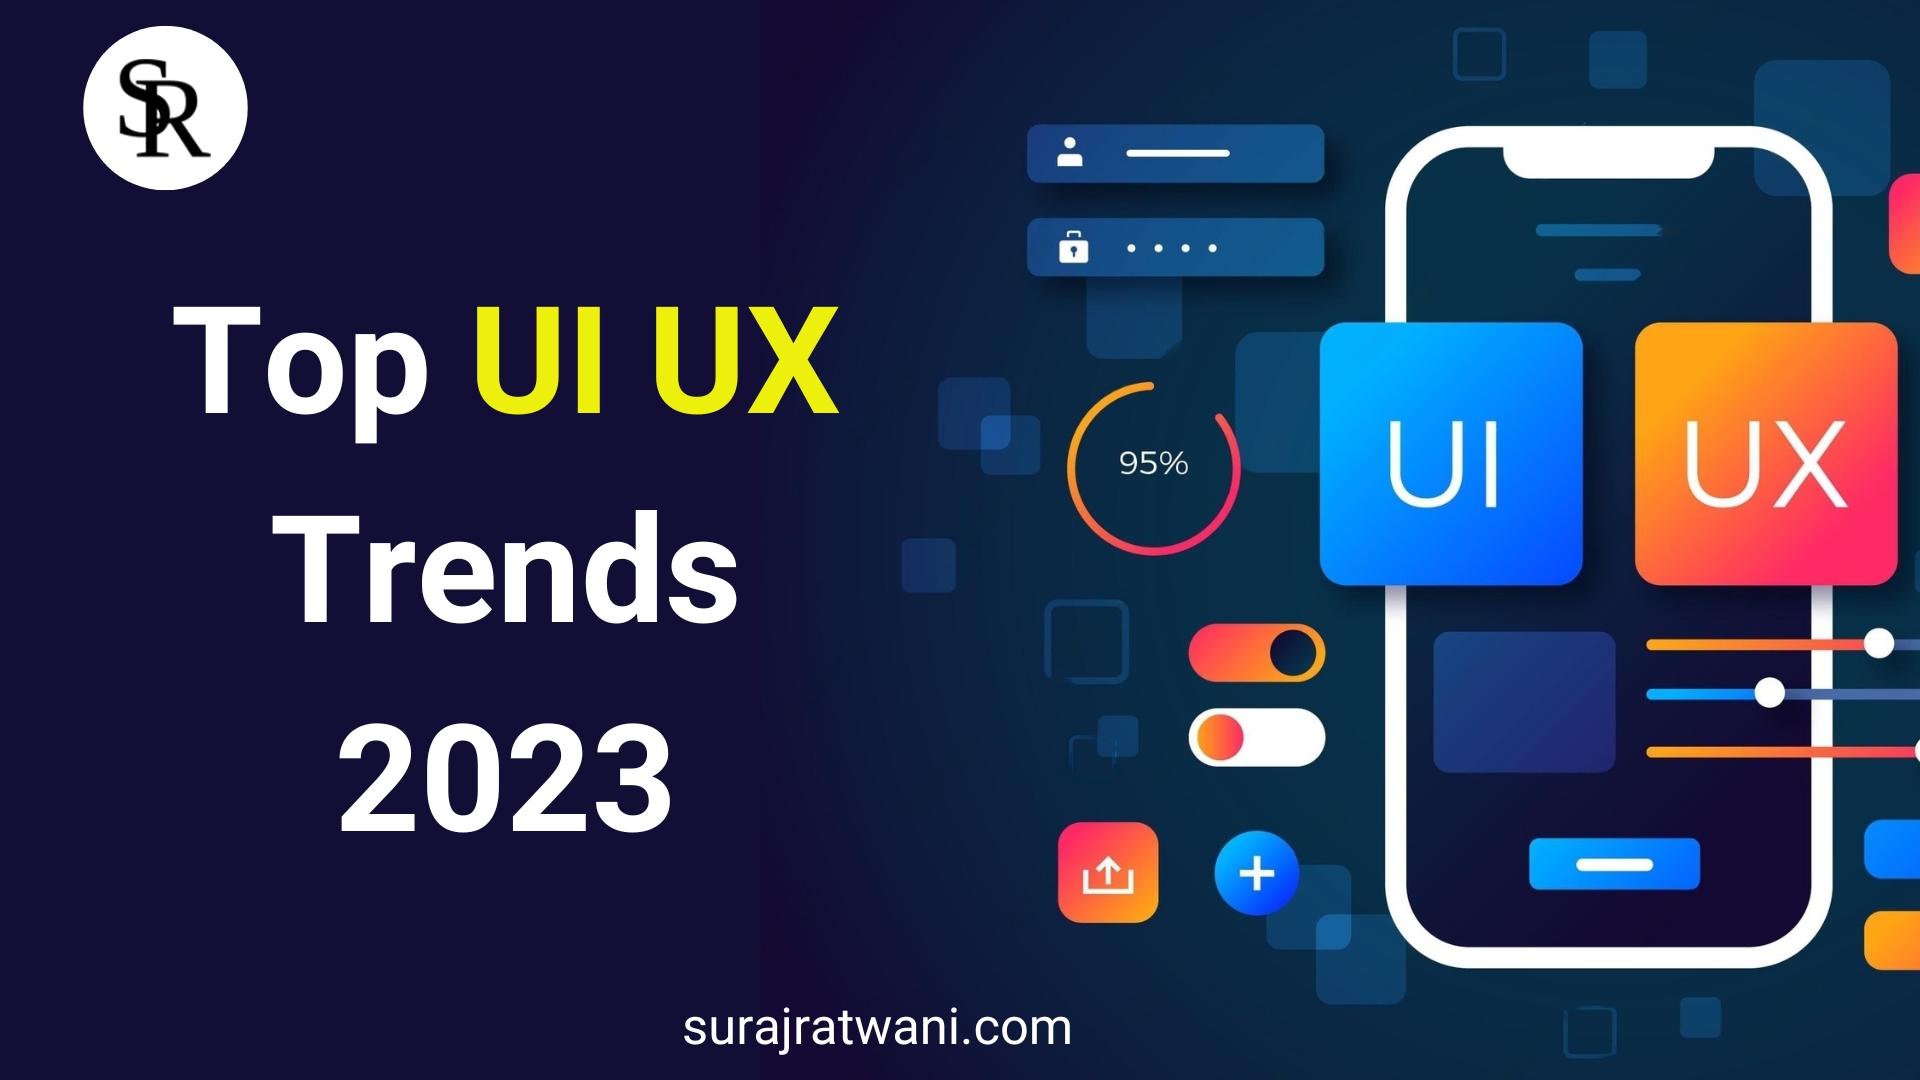 UX/UI design trends